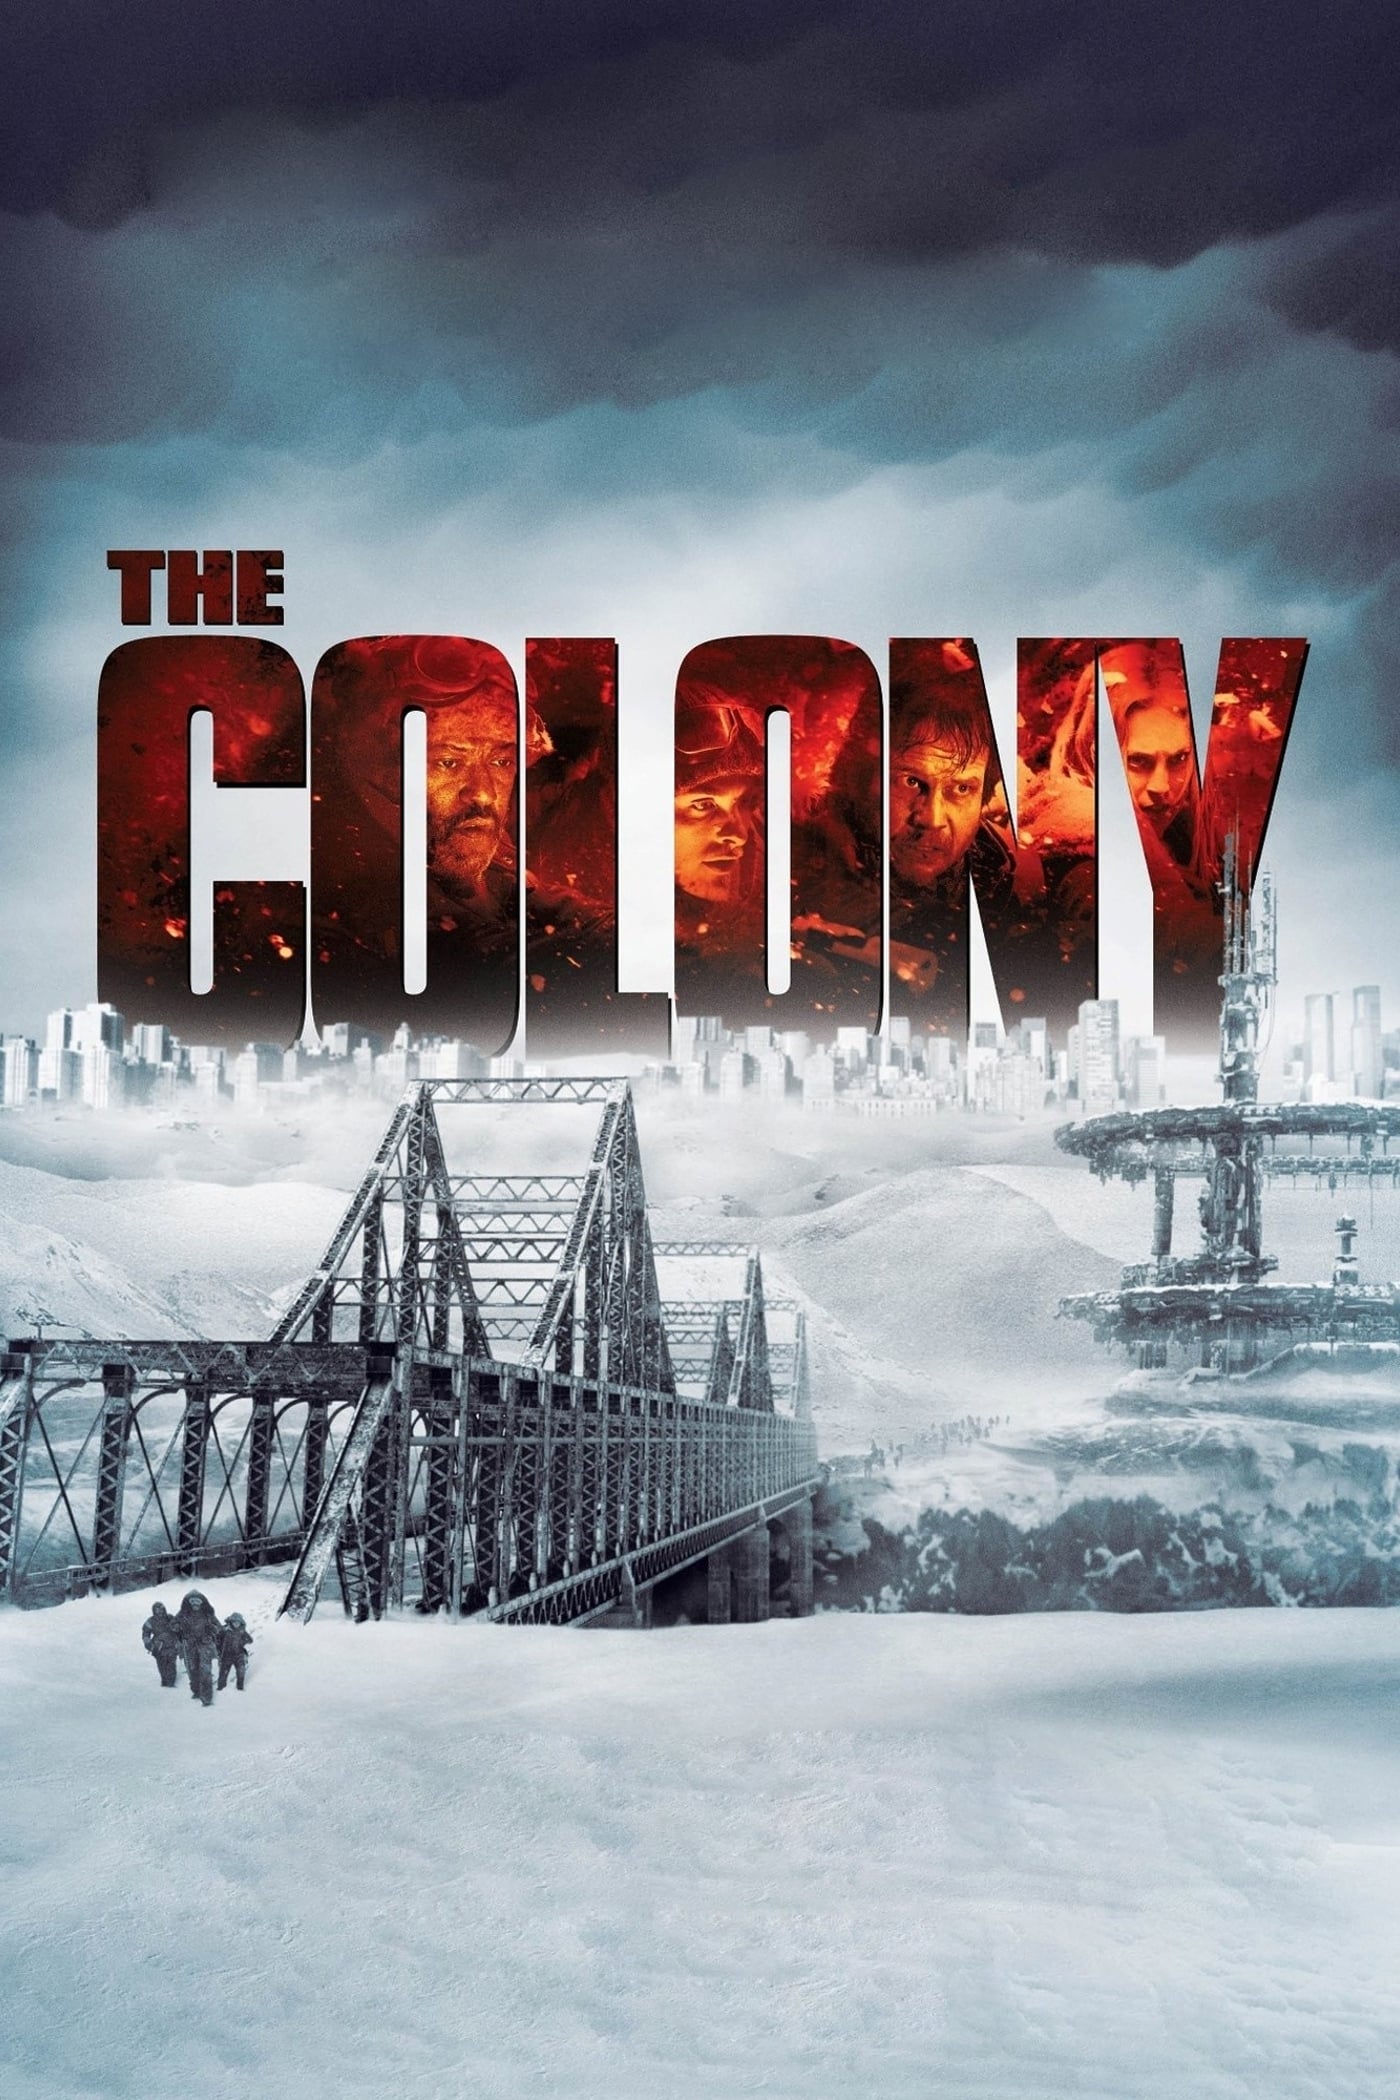 Vùng Đất Khắc Nghiệt (The Colony) [2013]